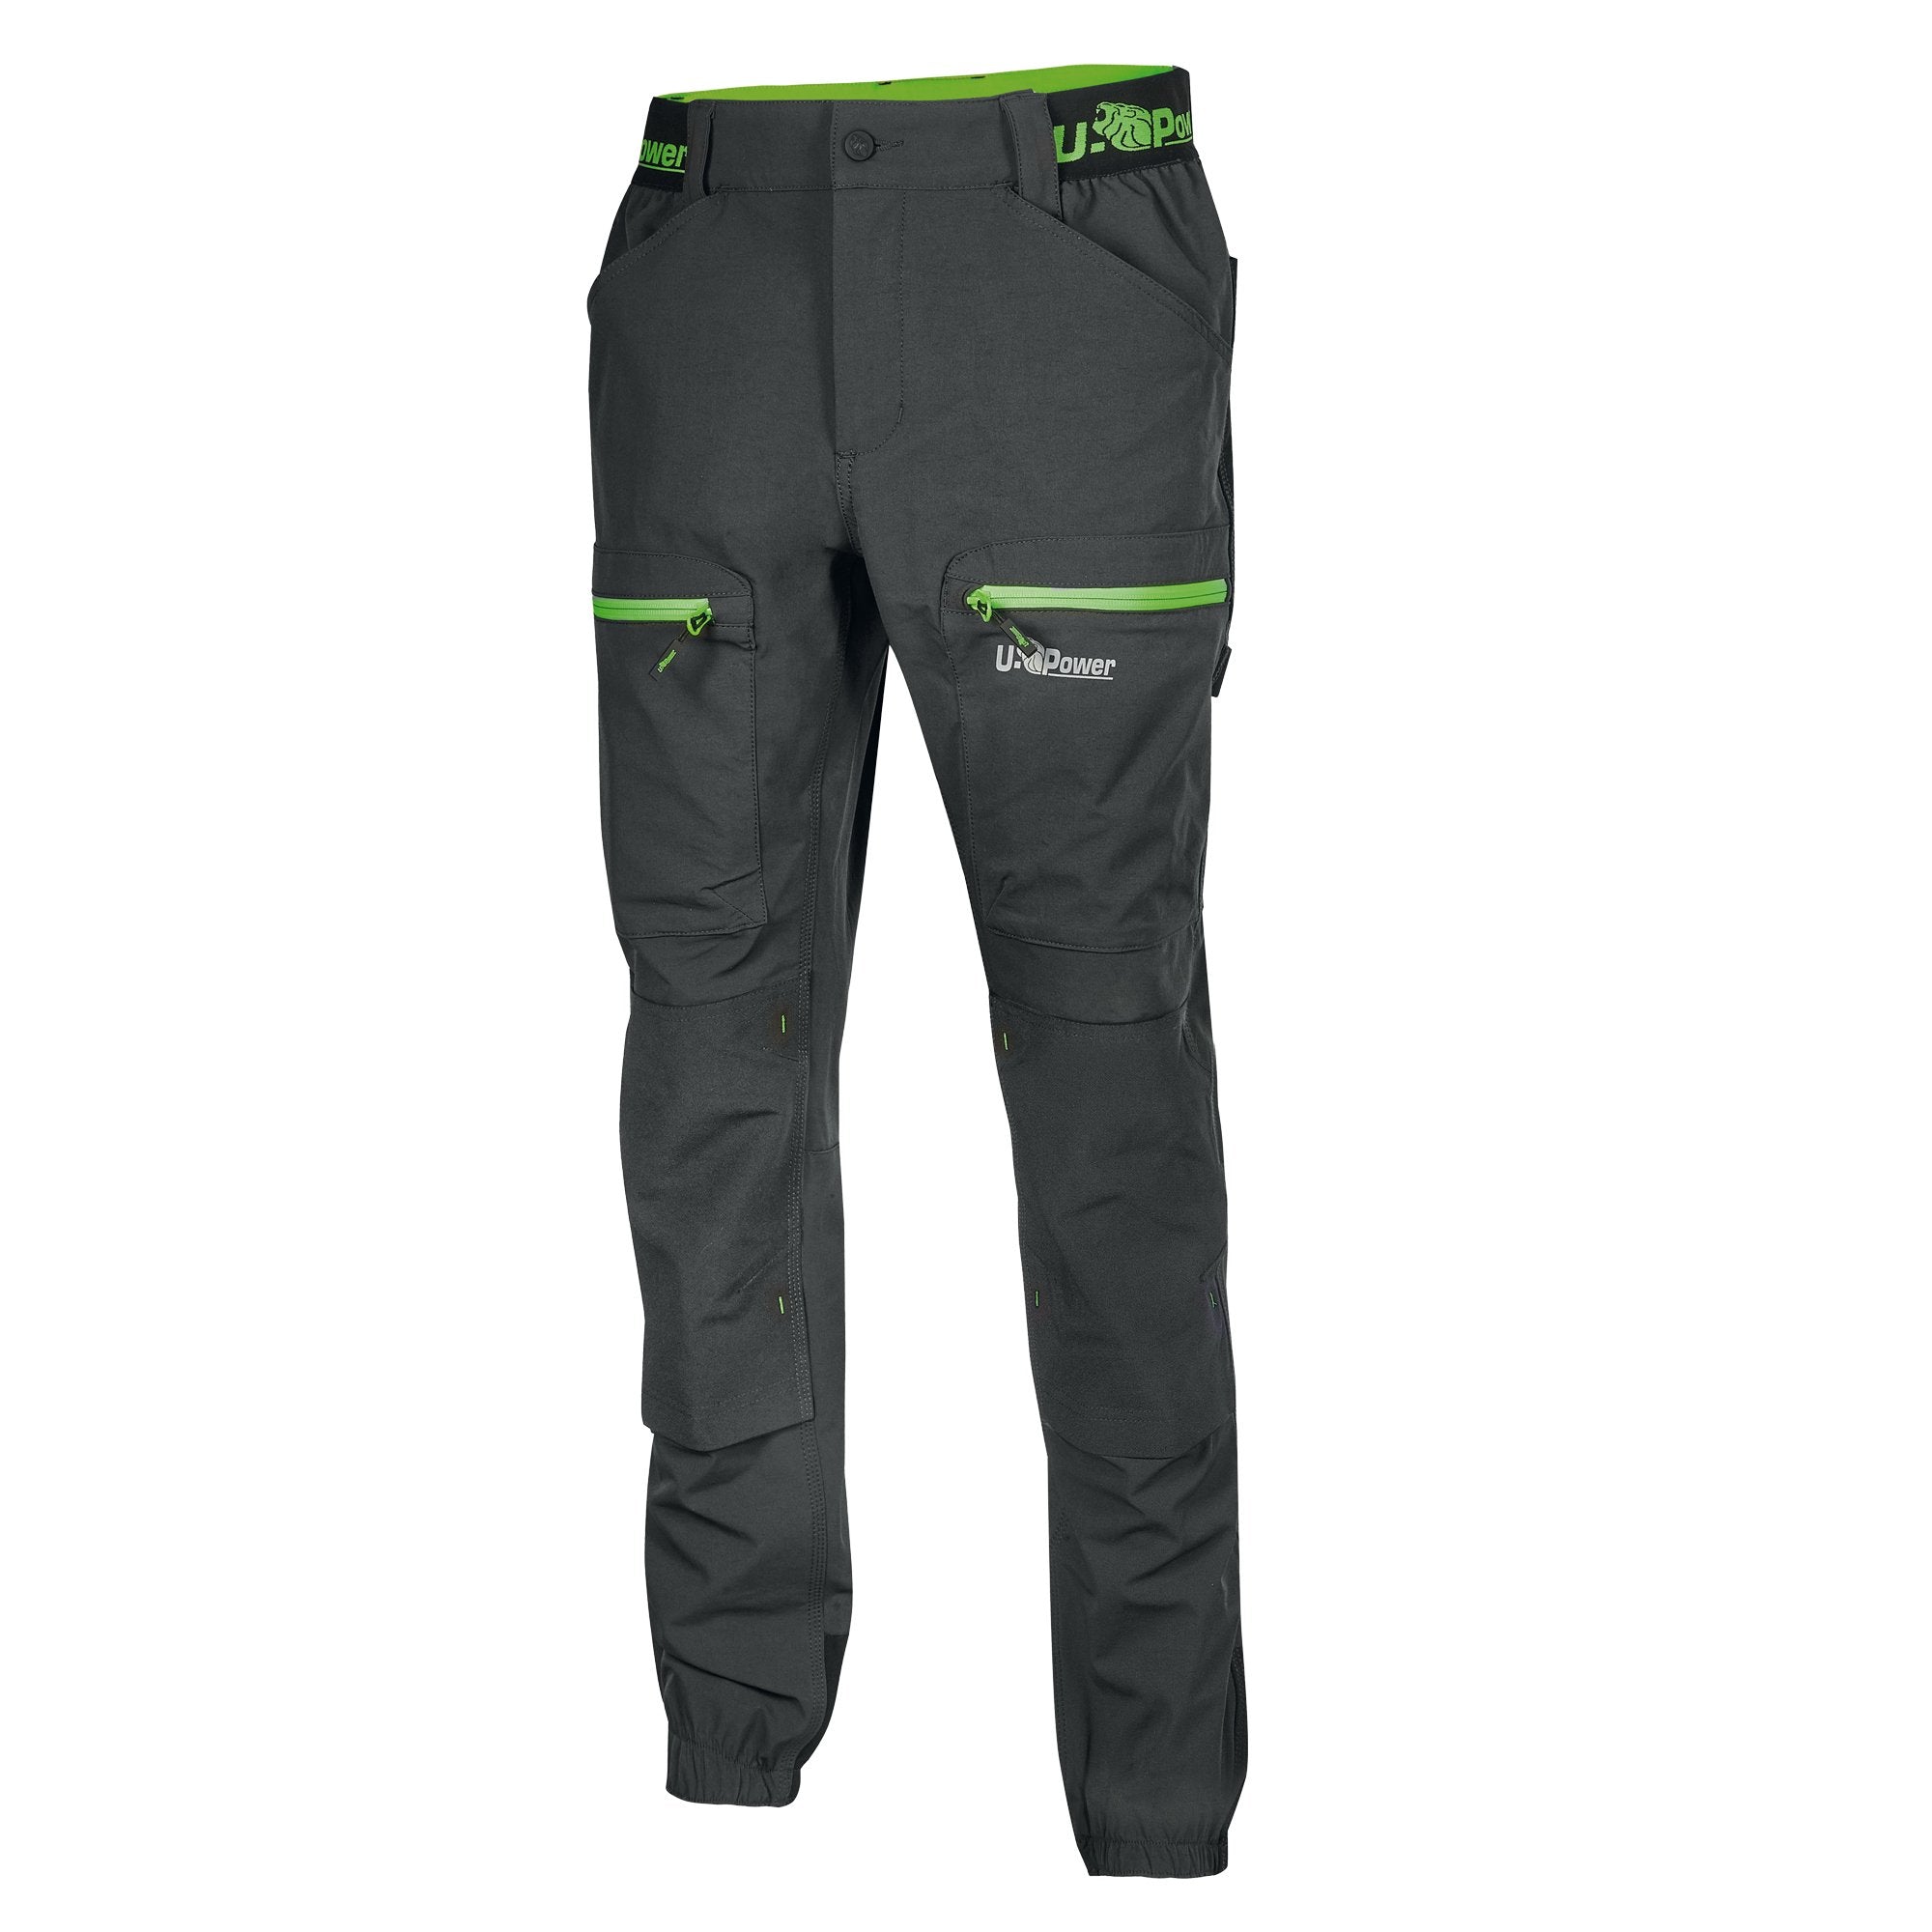 u-power-pantaloni-lavoro-harmony-taglia-xl-grigio-verde